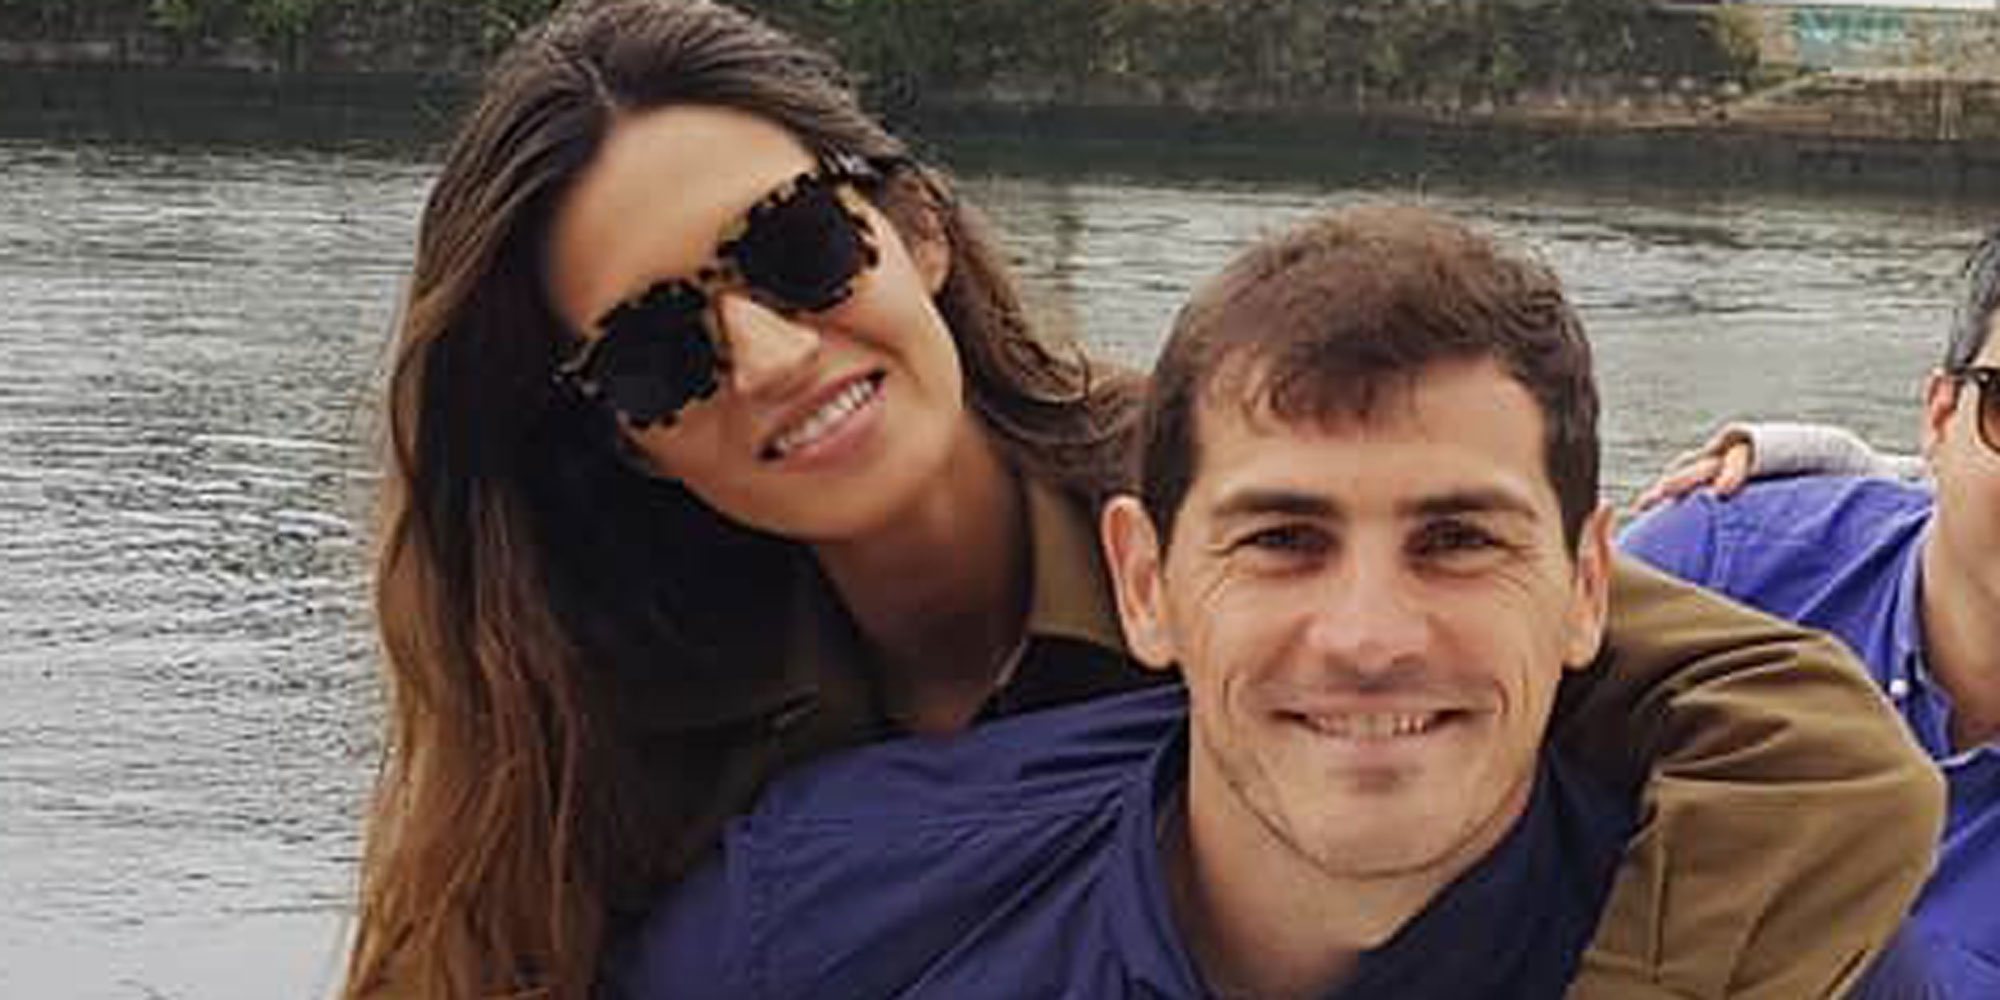 Iker Casillas y Sara Carbonero cierran su etapa en Oporto después de cinco años